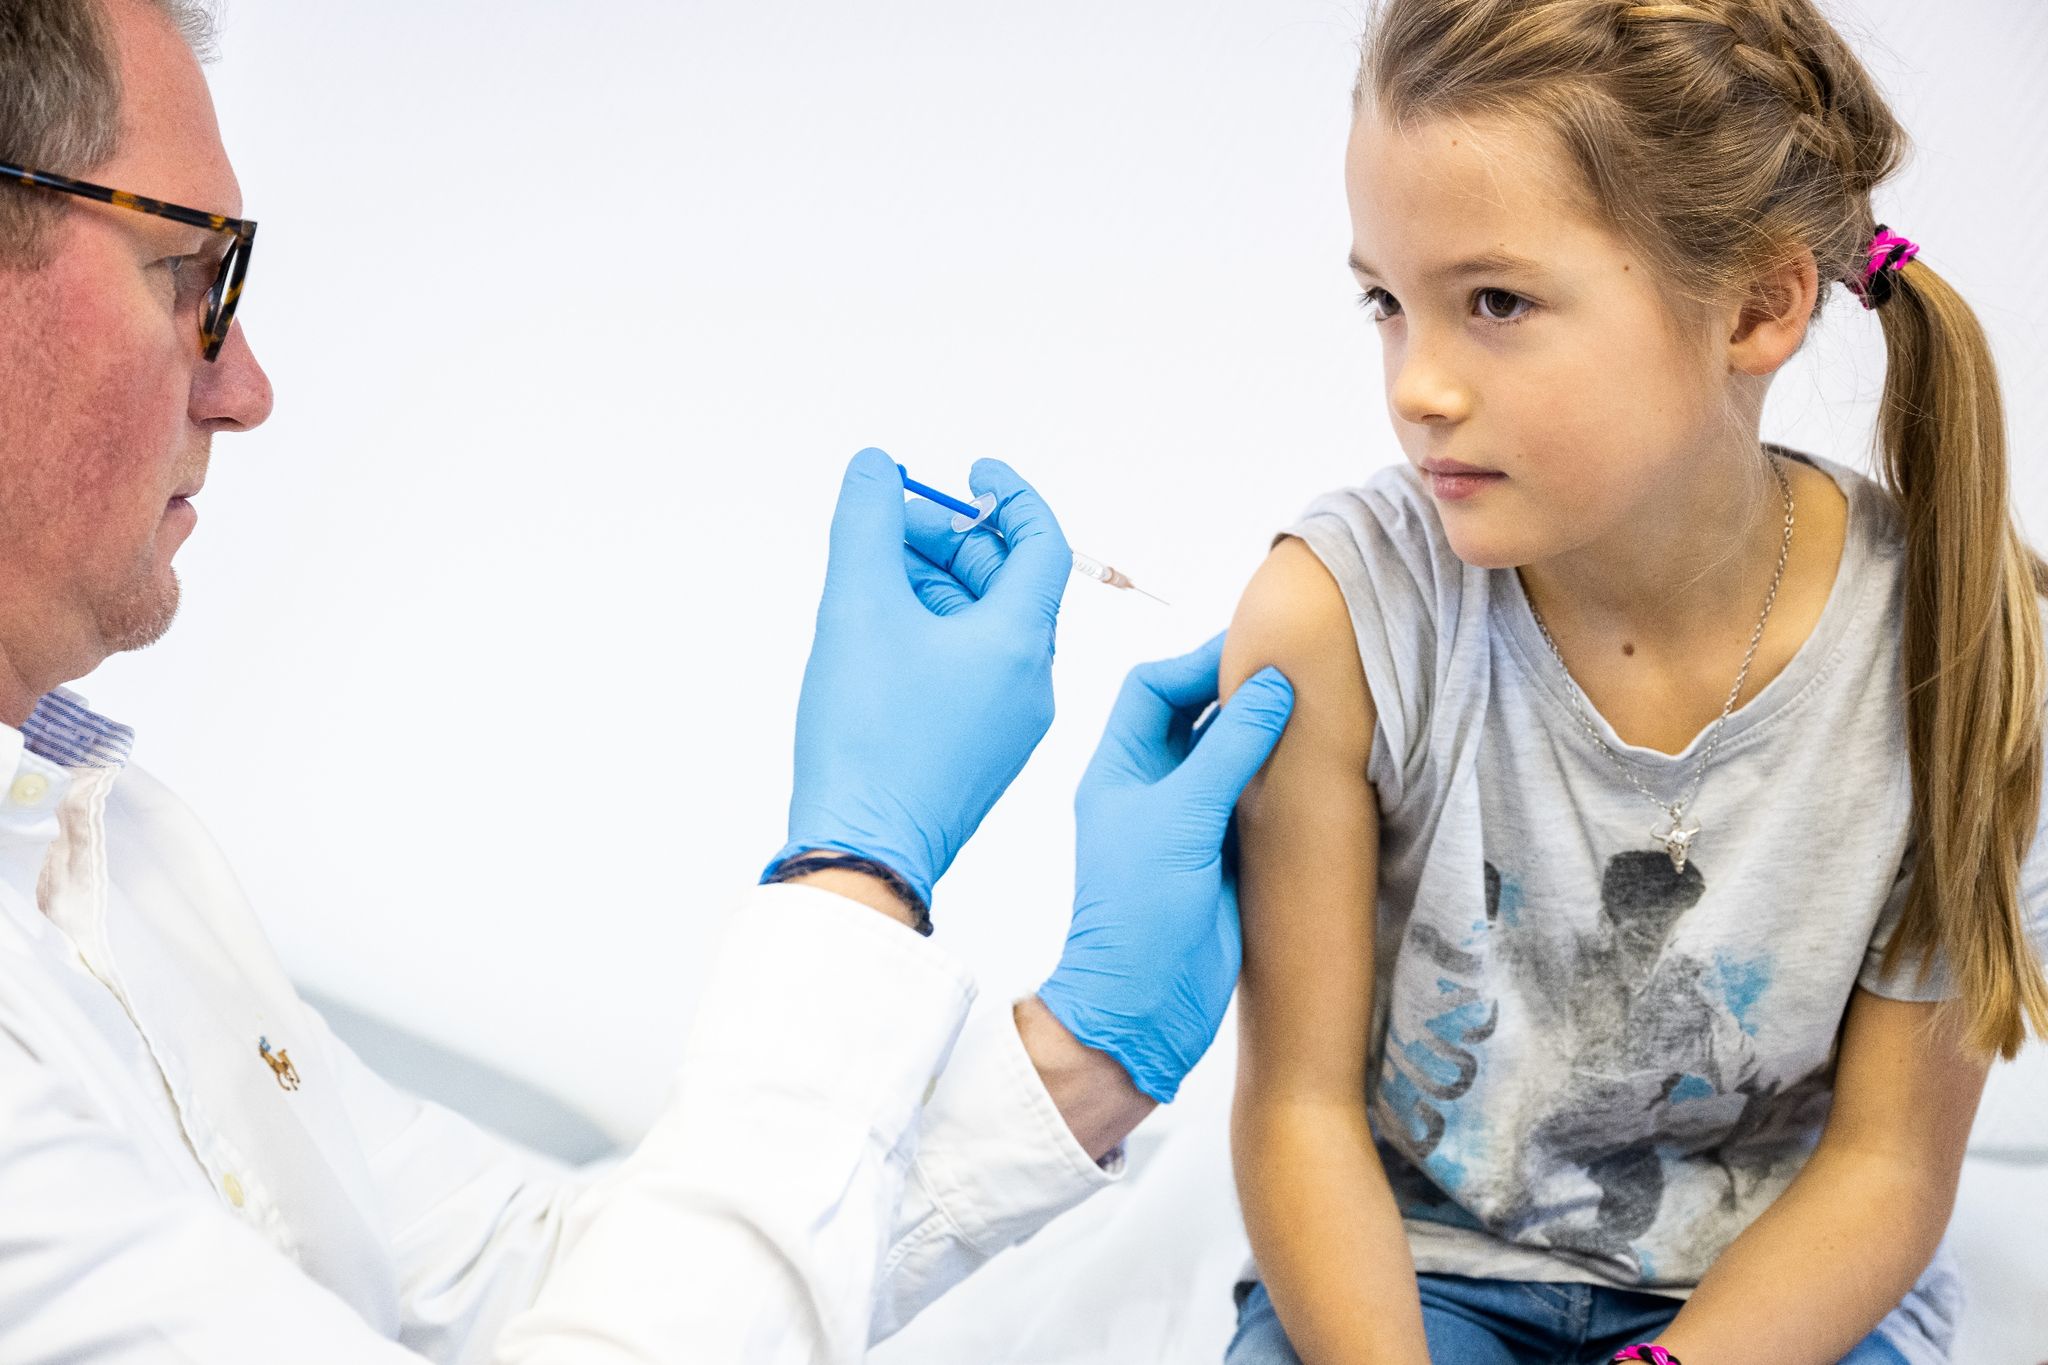 Eine Impfung kann verhindern, dass eine Grippe schwer verläuft. Kinder mit bestimmten Erkrankungen profitieren darum von dem Piks.